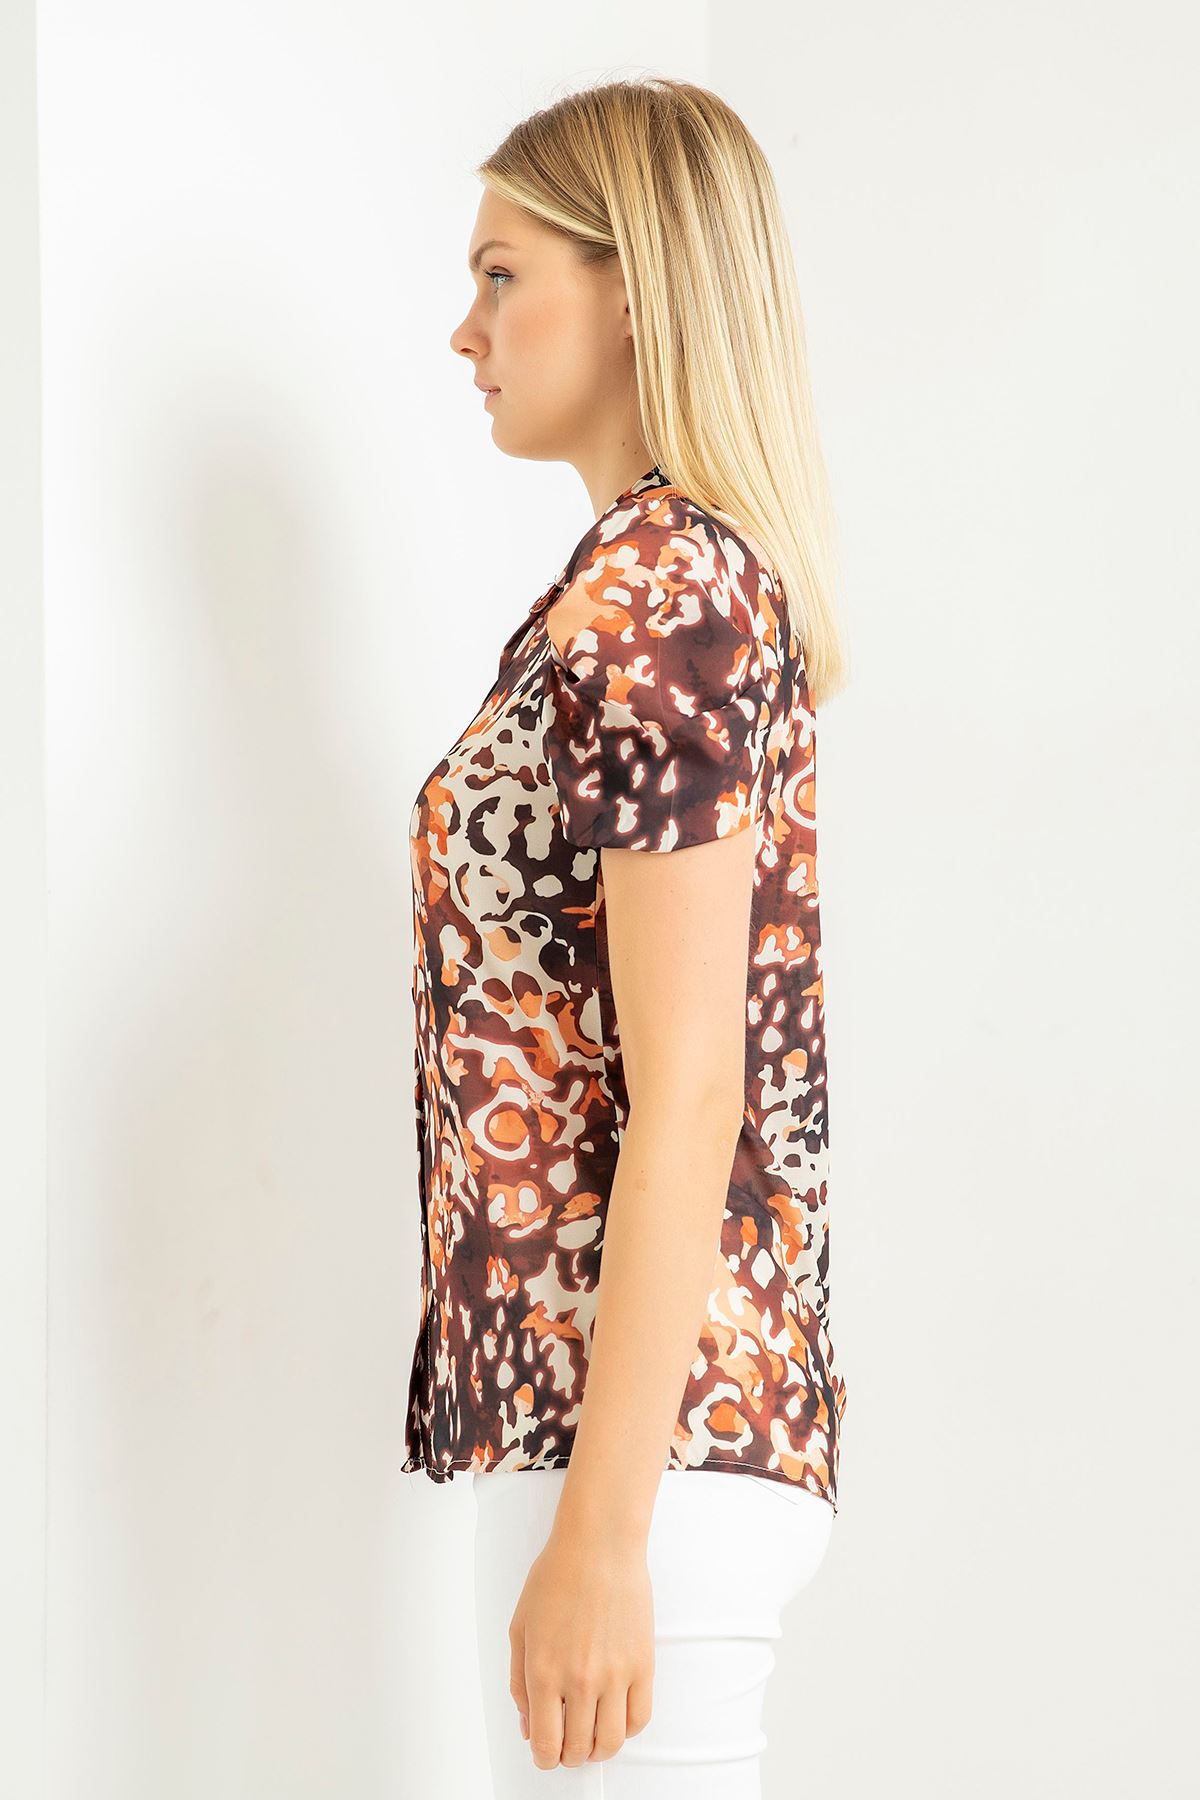 Jesica Fabric Short Sleeve Hip Height Leopard Print Women'S Shirt - Brown